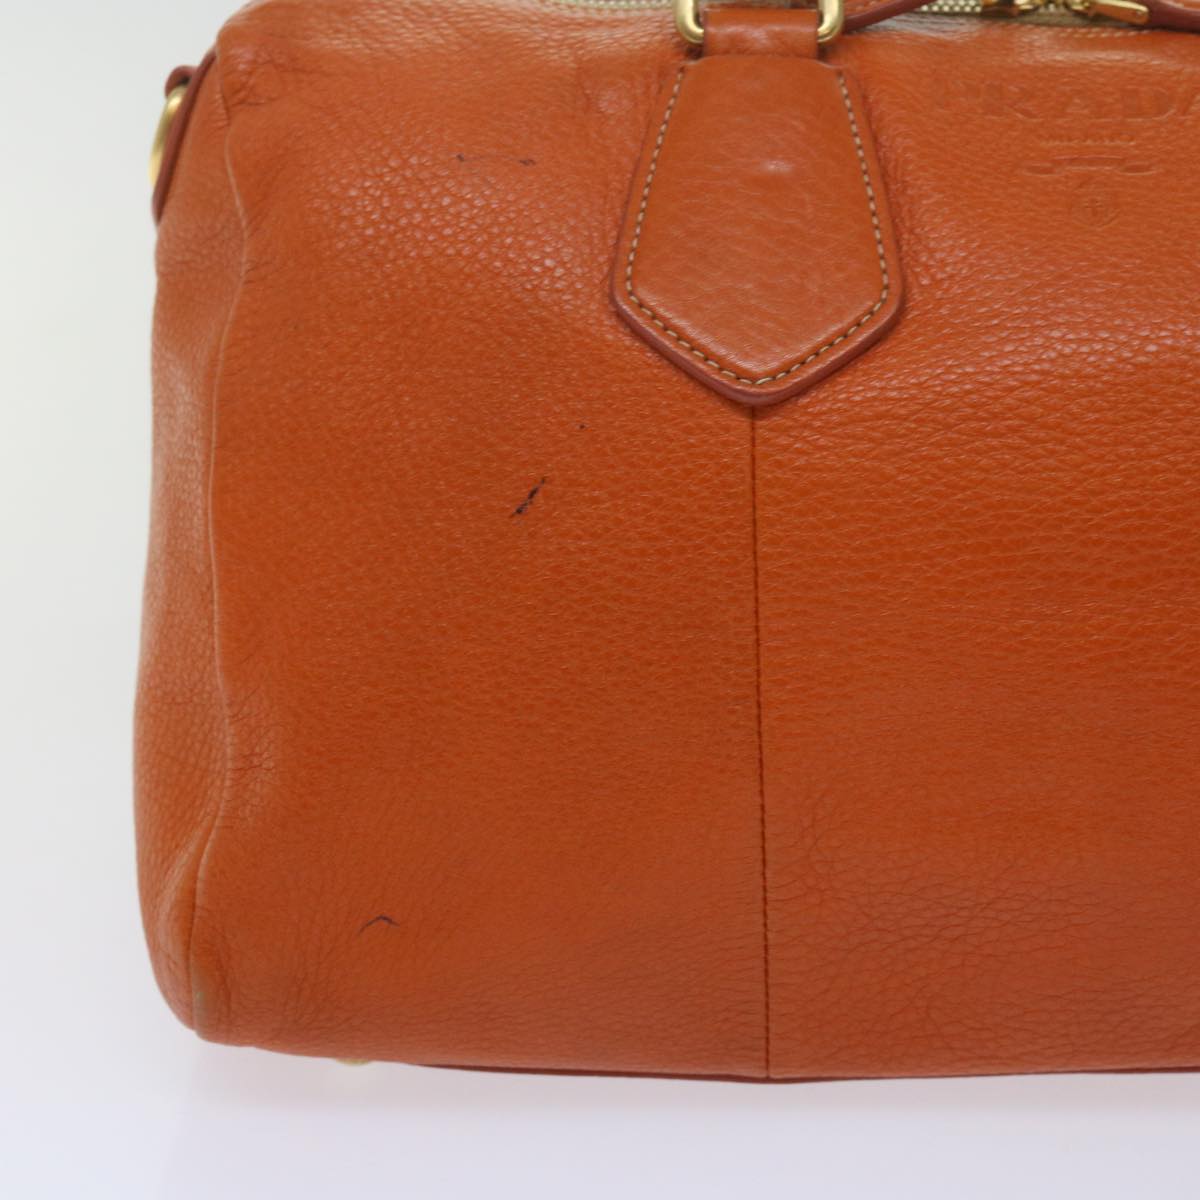 PRADA Hand Bag Leather Orange Auth am5447 - 0